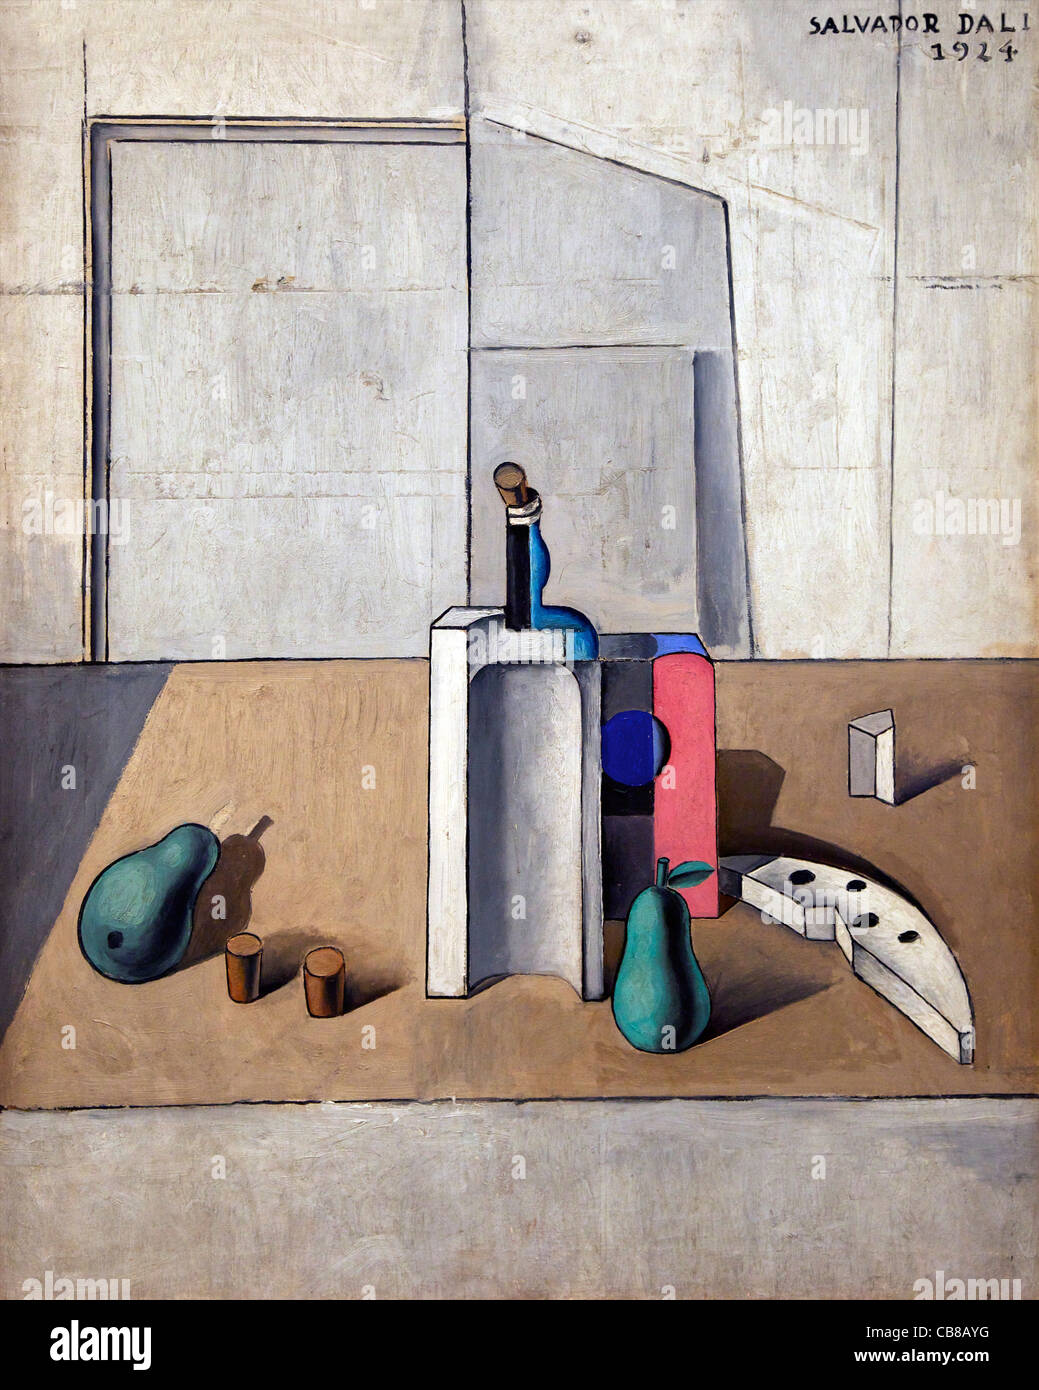 Still Life, Salvador Dali, 1924, Museo Nacional Centro de Arte Reina Sofía, Museo di Arte moderna Reina Sofia, Madrid, Spagna Foto Stock